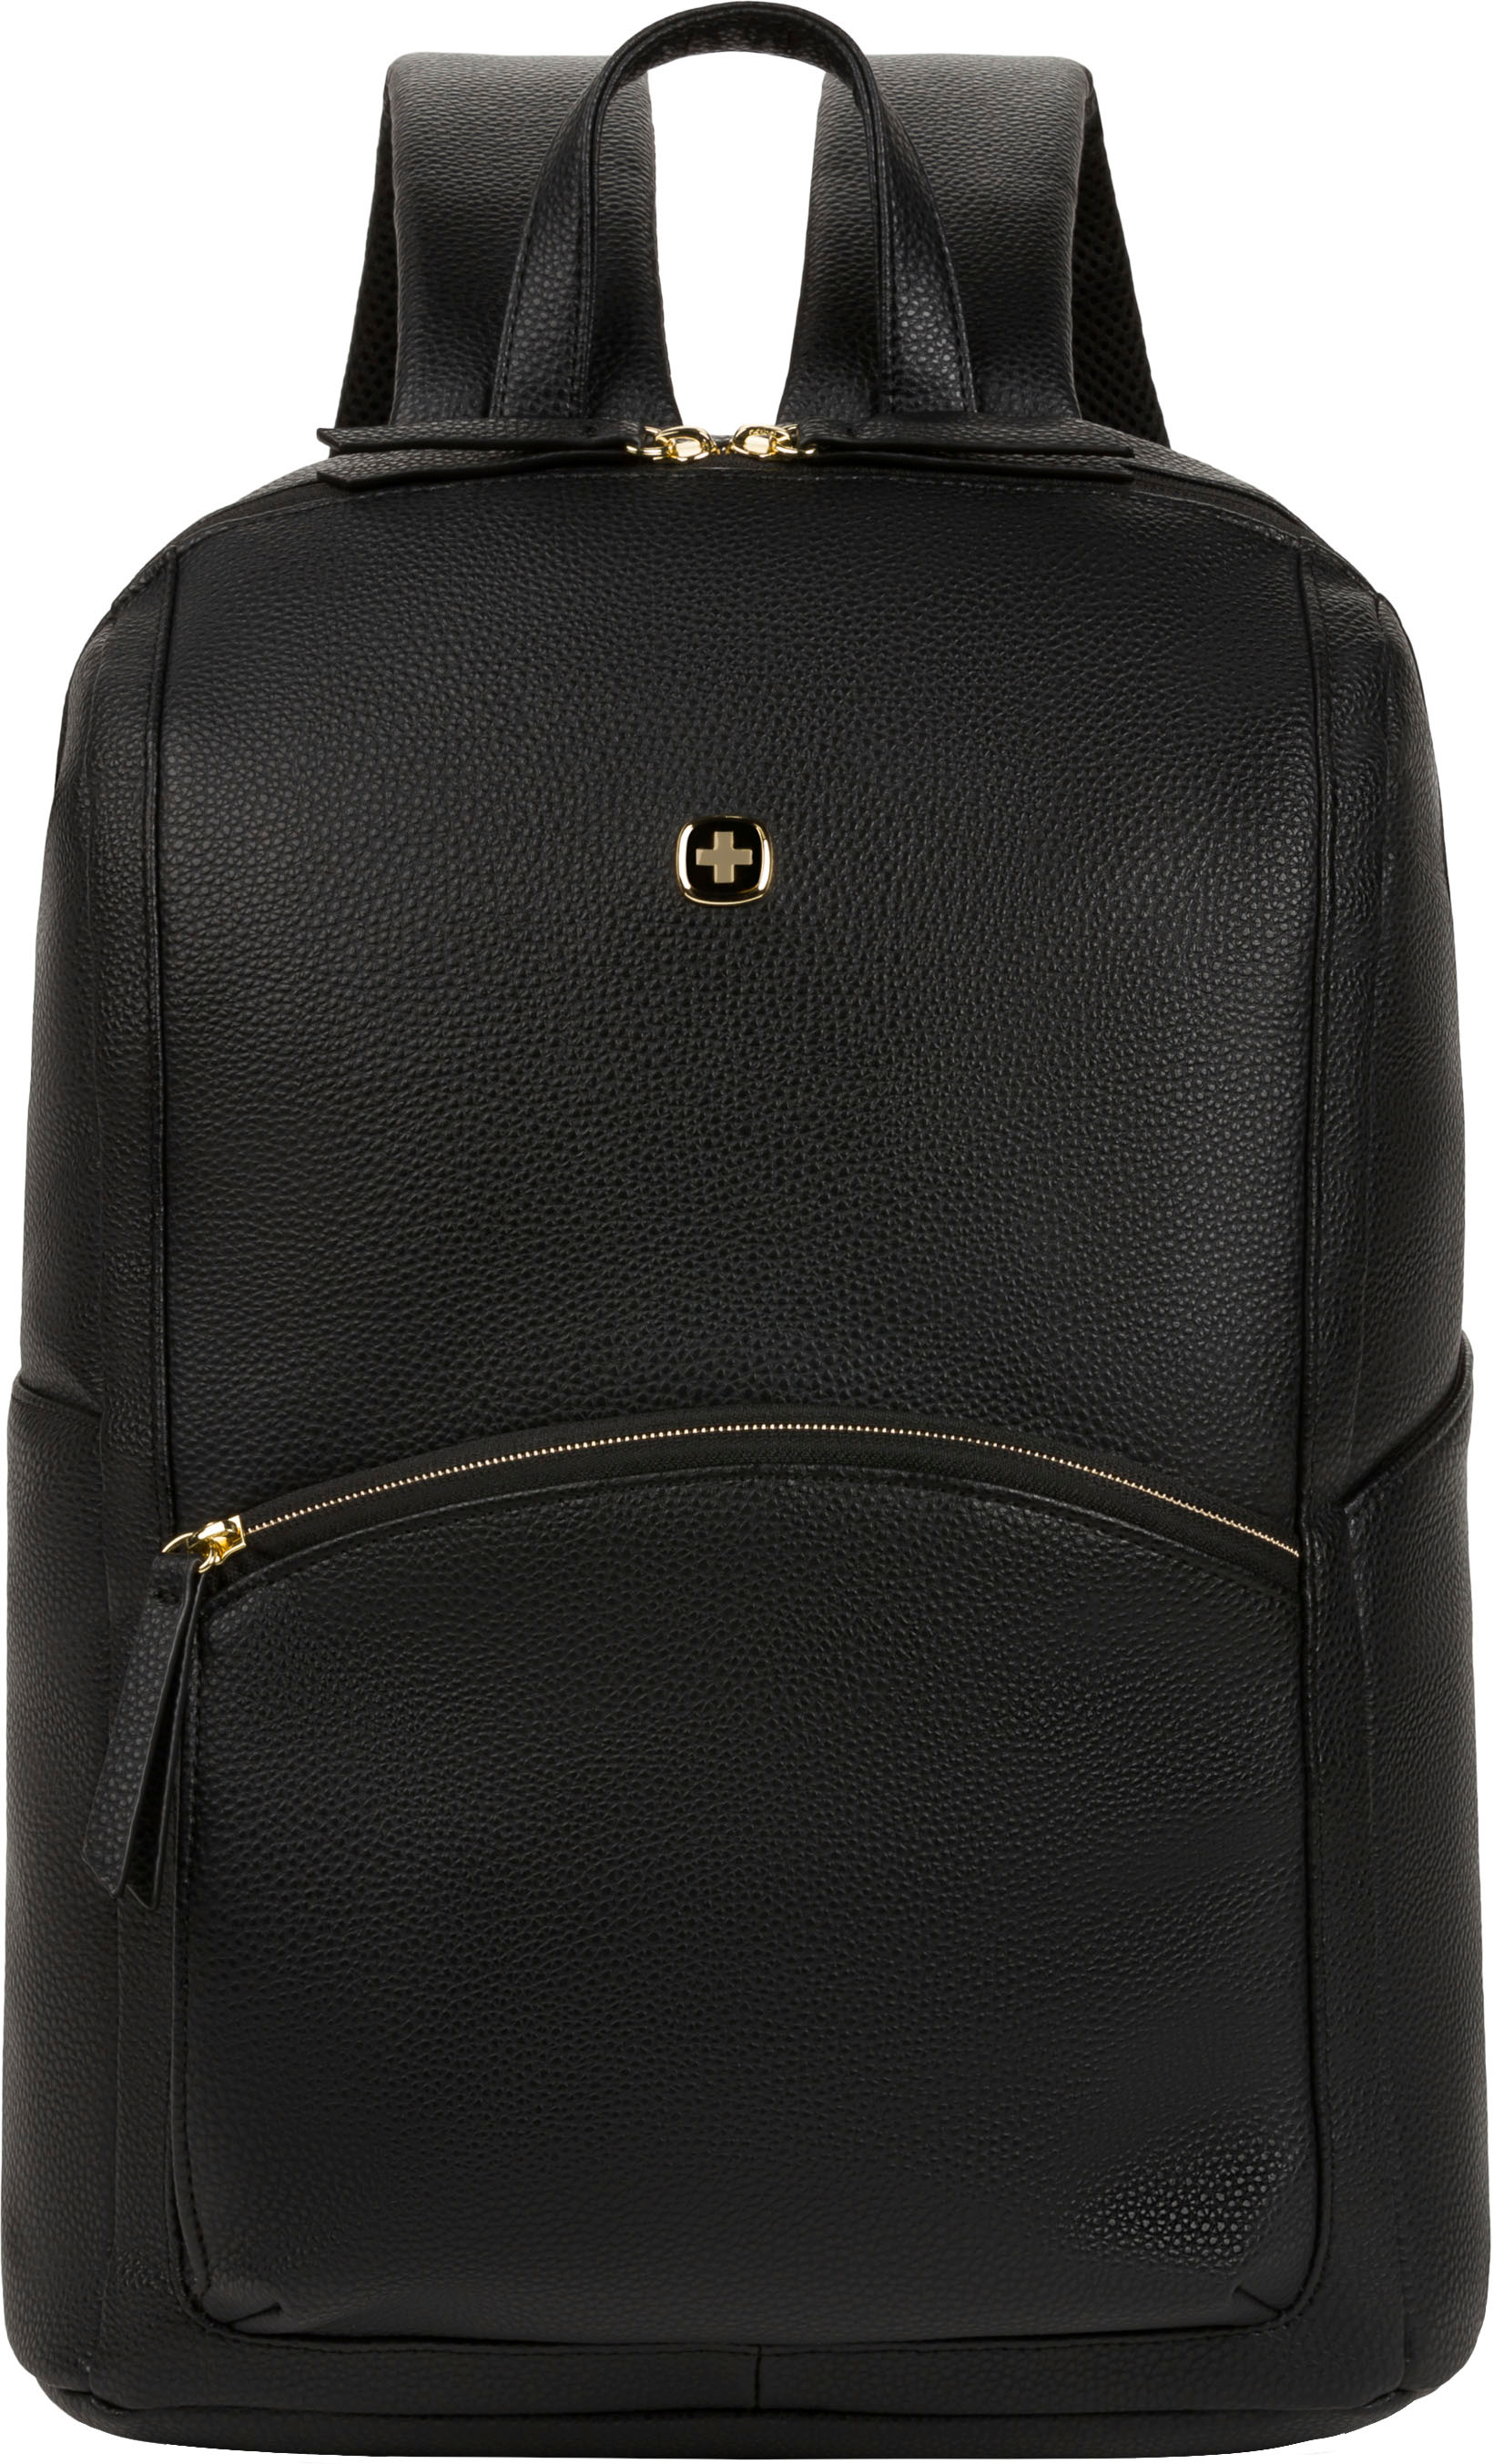 SwissGear - 9901 Ladies Laptop Backpack - Black